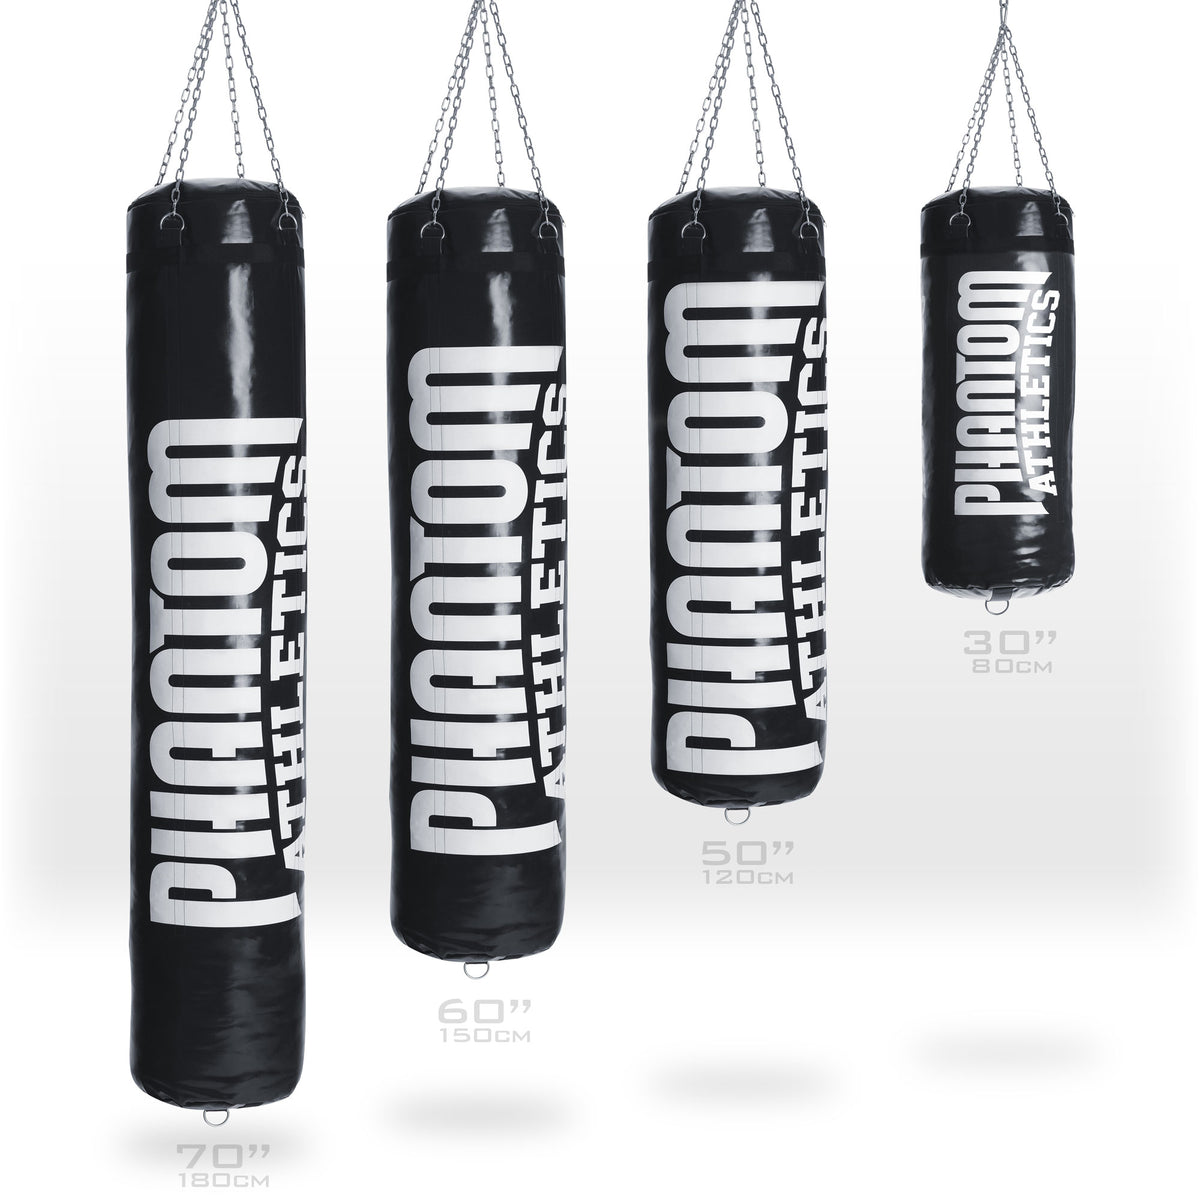 Phantom High Performance Boxsack in 4 verschiedenen Größen: 180cm, 150cm, 120cm und 80cm